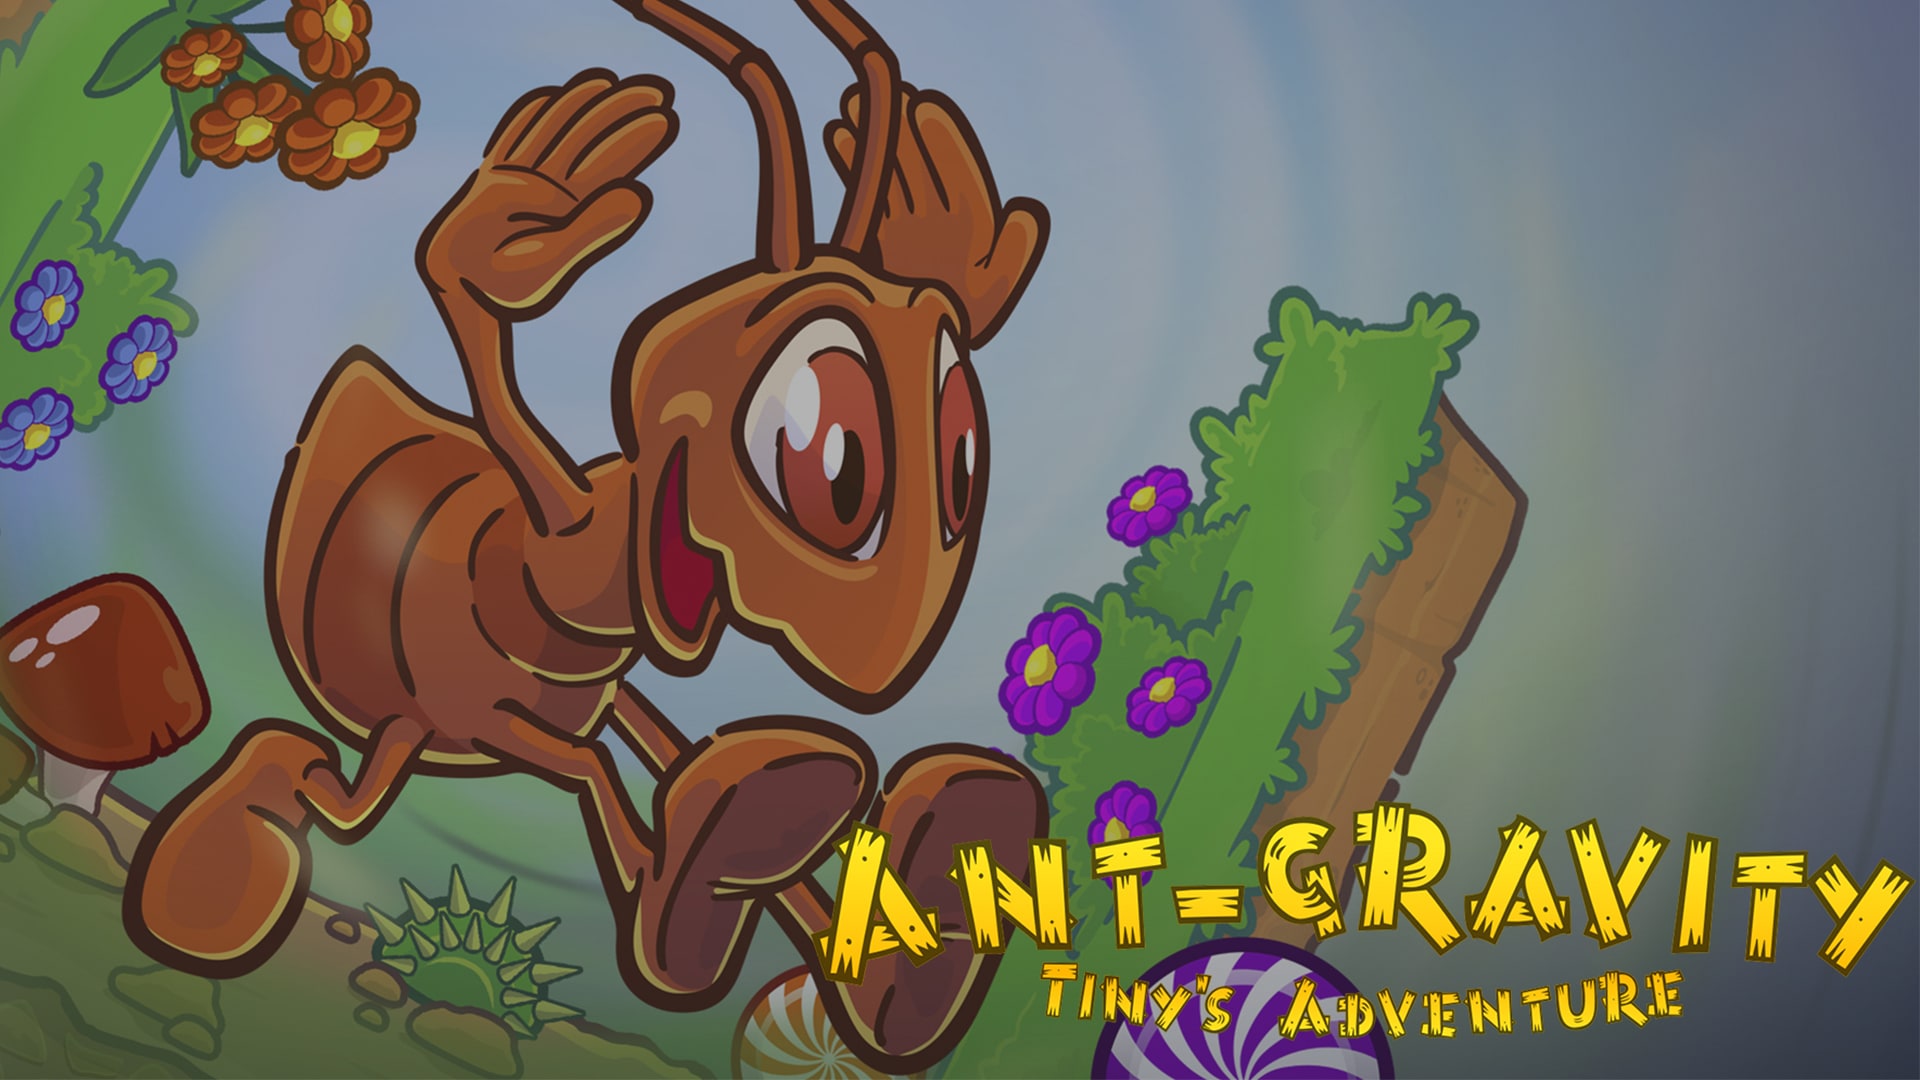 Ant-Gravity: Tiny's Adventure